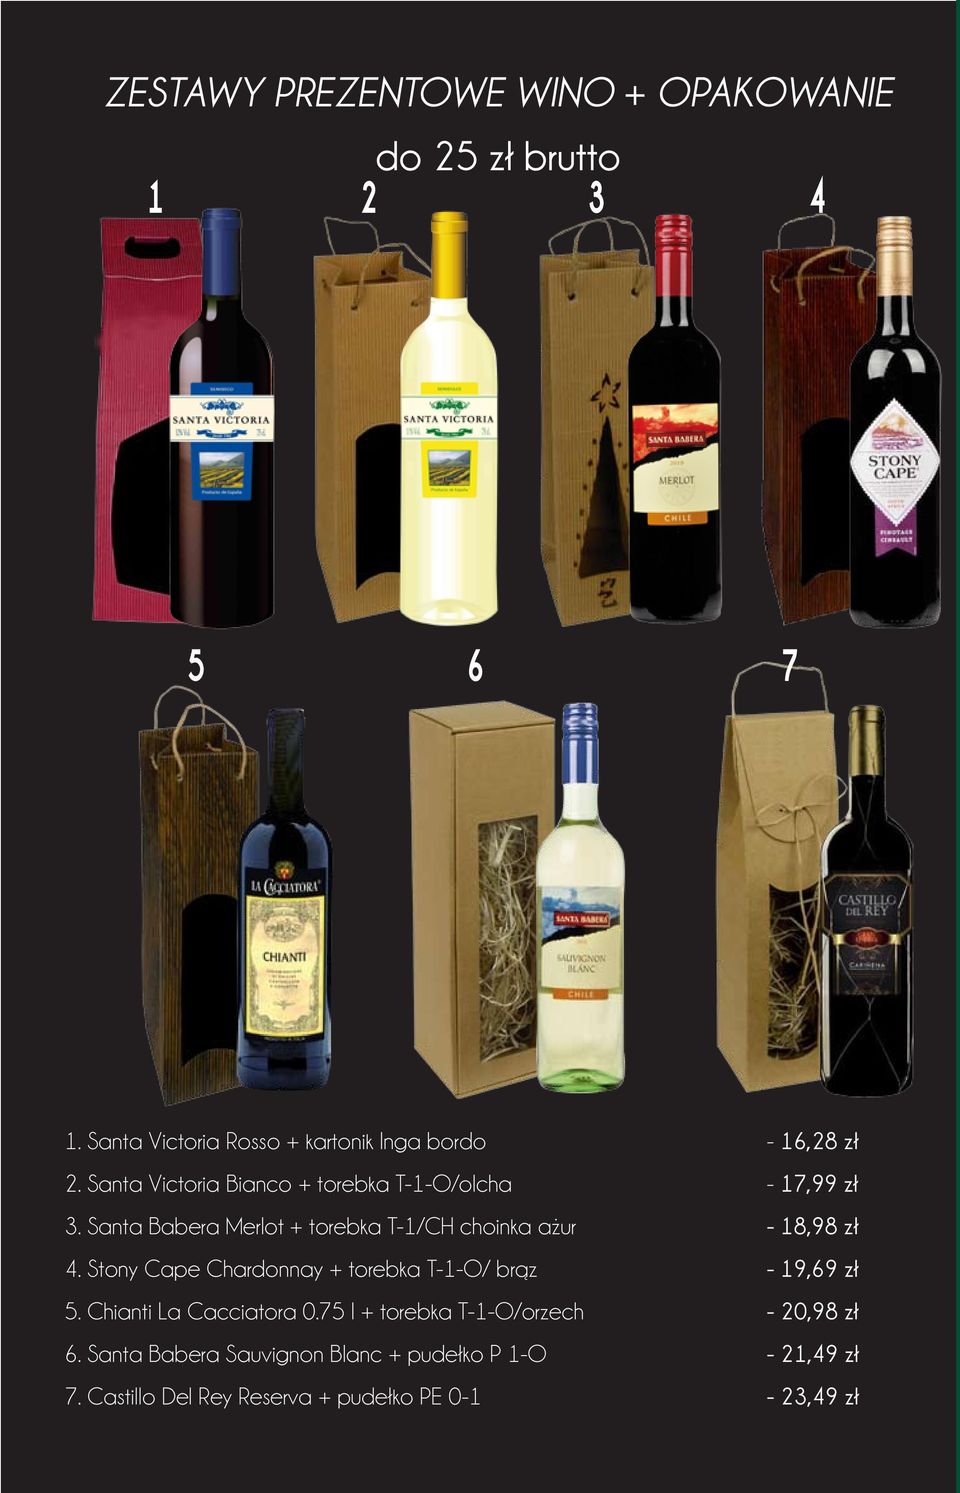 Santa Babera Merlot + torebka T-1/CH choinka ażur - 18,98 zł 4. Stony Cape Chardonnay + torebka T-1-O/ brąz - 19,69 zł 5.